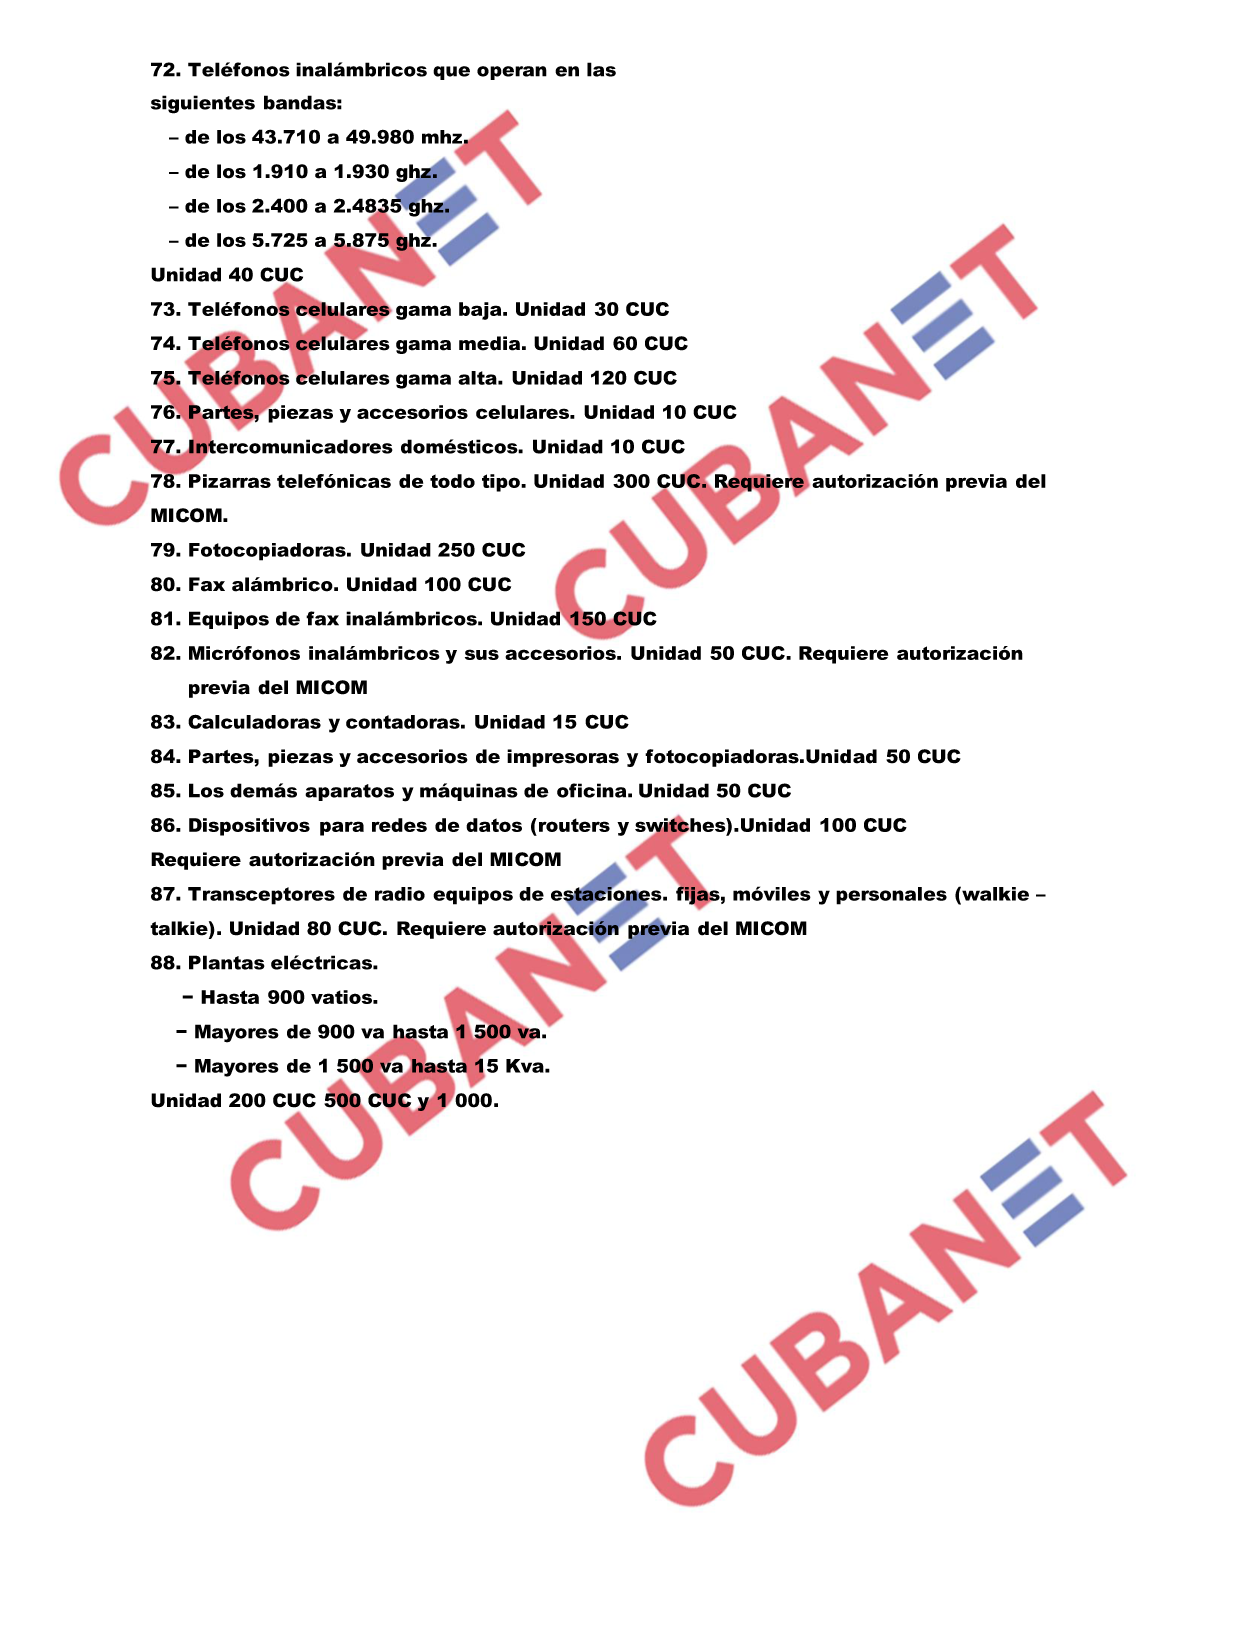 Listado de las nuevas regulaciones aduanales en Cuba3